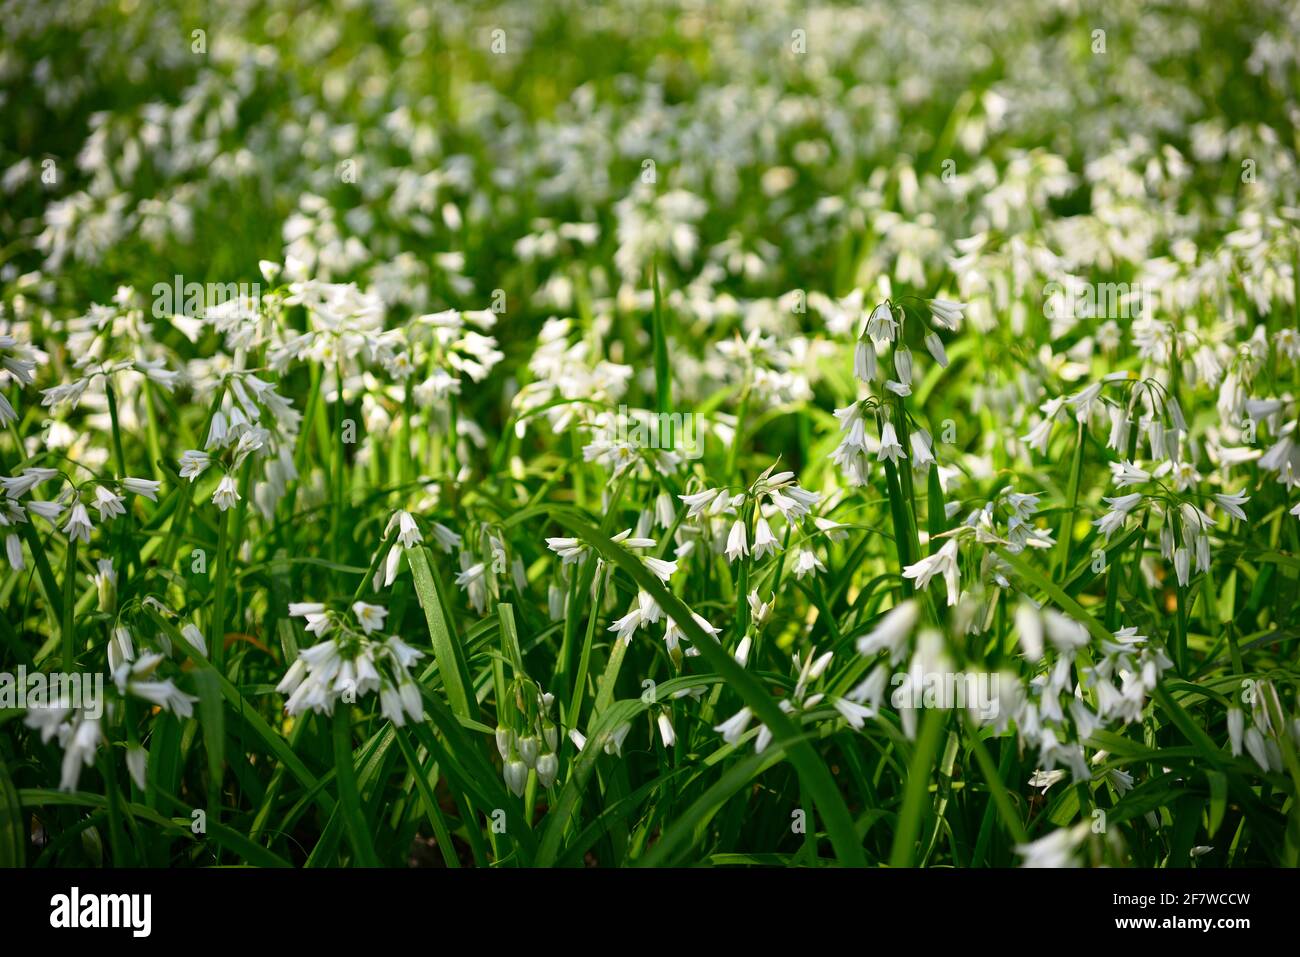 Flores blancas de puerro de tres cabezas, Allium triquetrum, planta de la familia de las cebollas y los ajos nativos de la cuenca mediterránea. Foto de stock